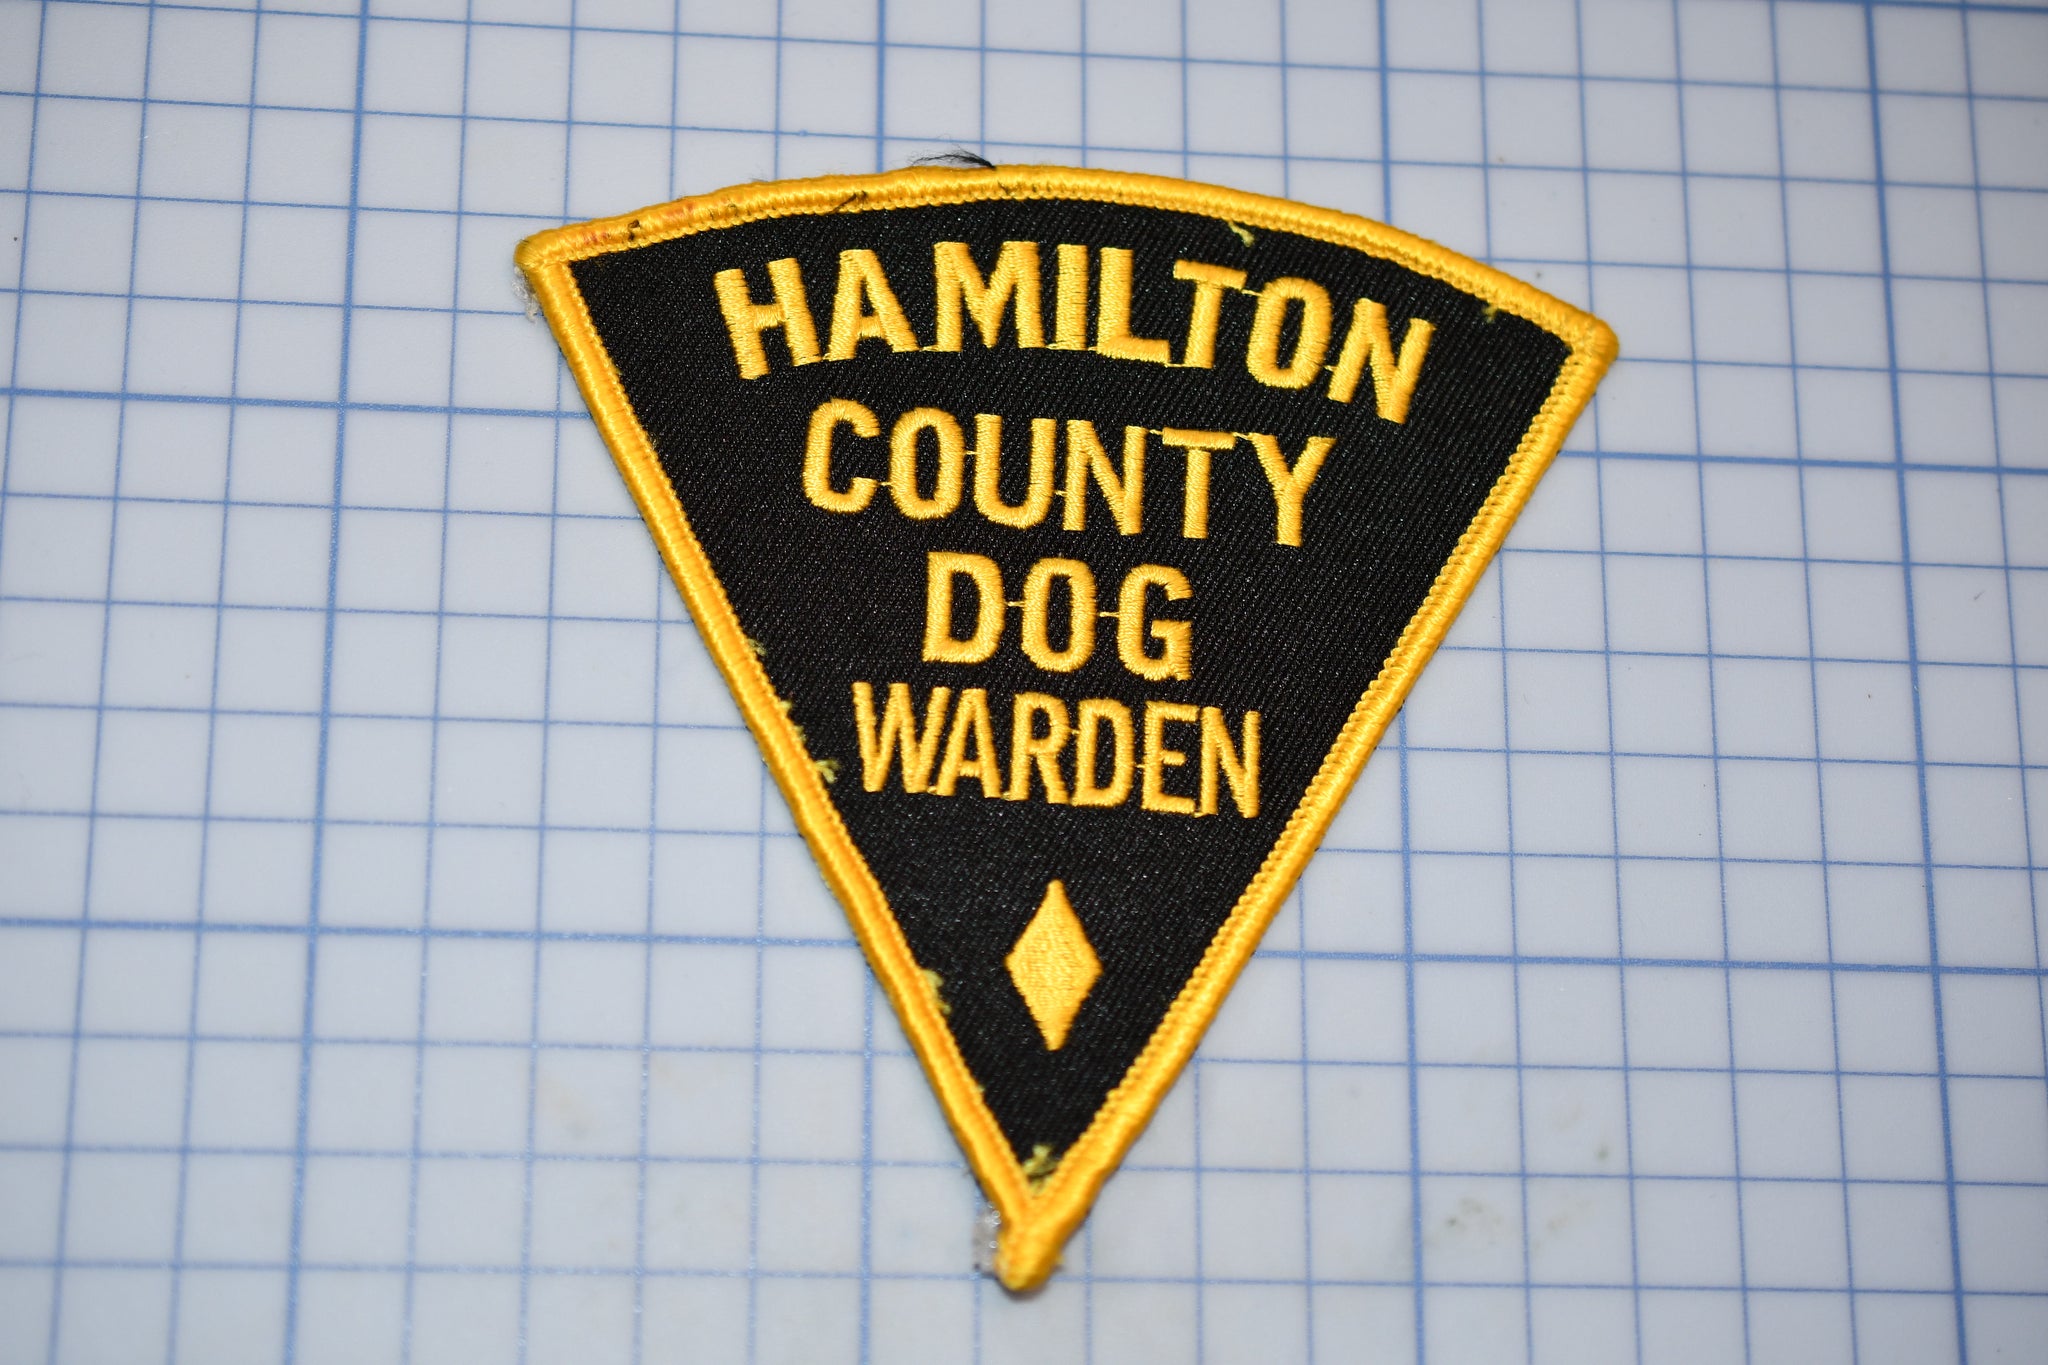 Hamilton County Ohio Dog Warden Patch (S5-3)